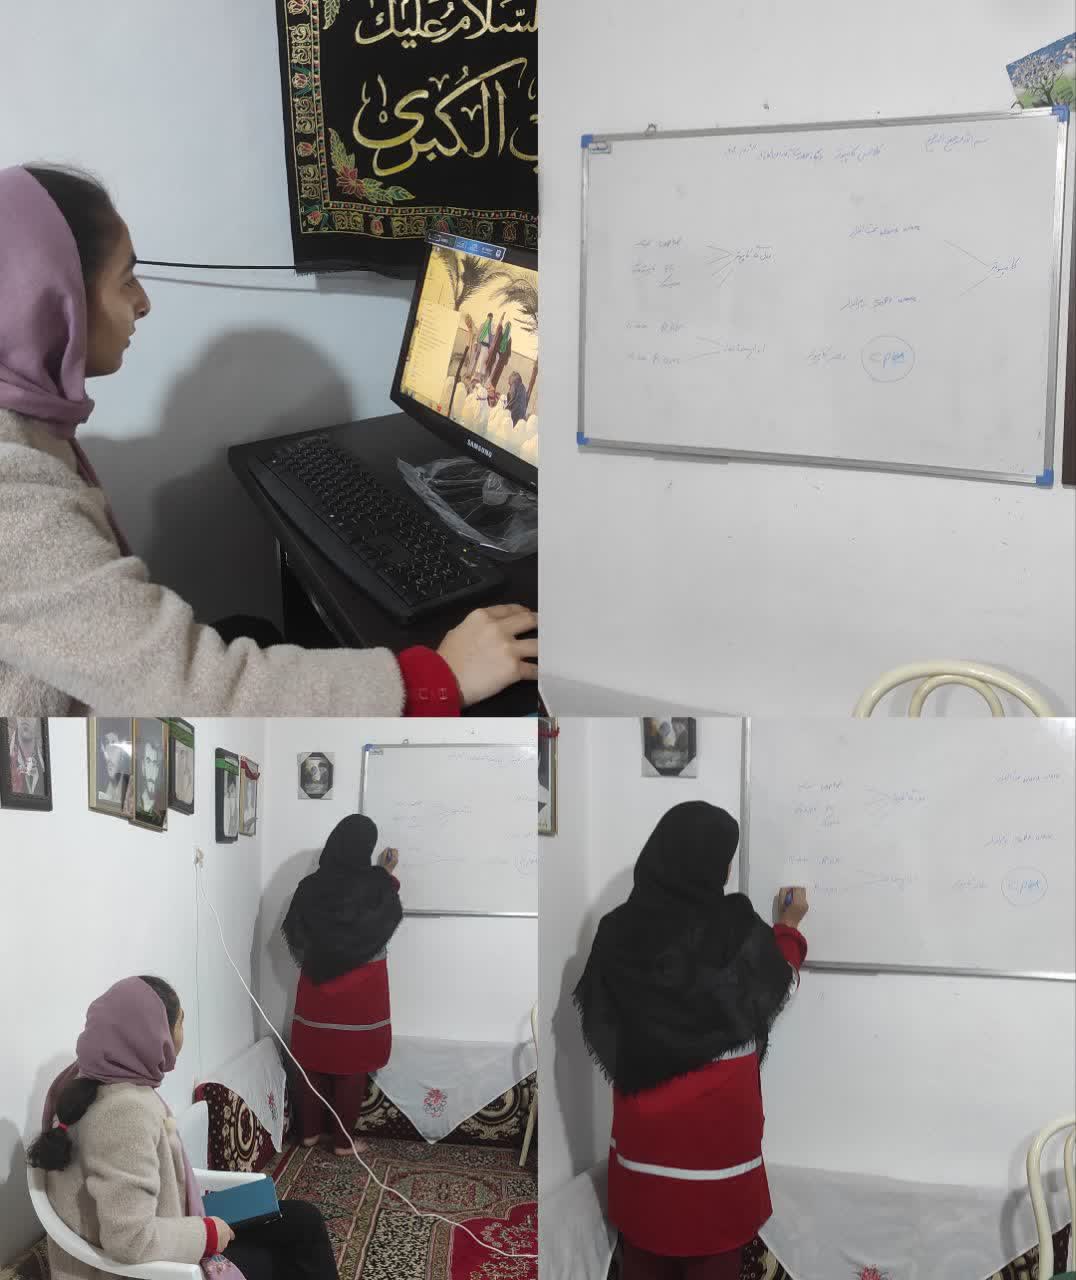 کارگاه  آموزشی مهارت های کامپیوتر بصورت حضوری  با هدف ارتقا سطح دانش و مهارت اعضای خواهر در خانه هلال روستای یالبندان، برگزار شد.